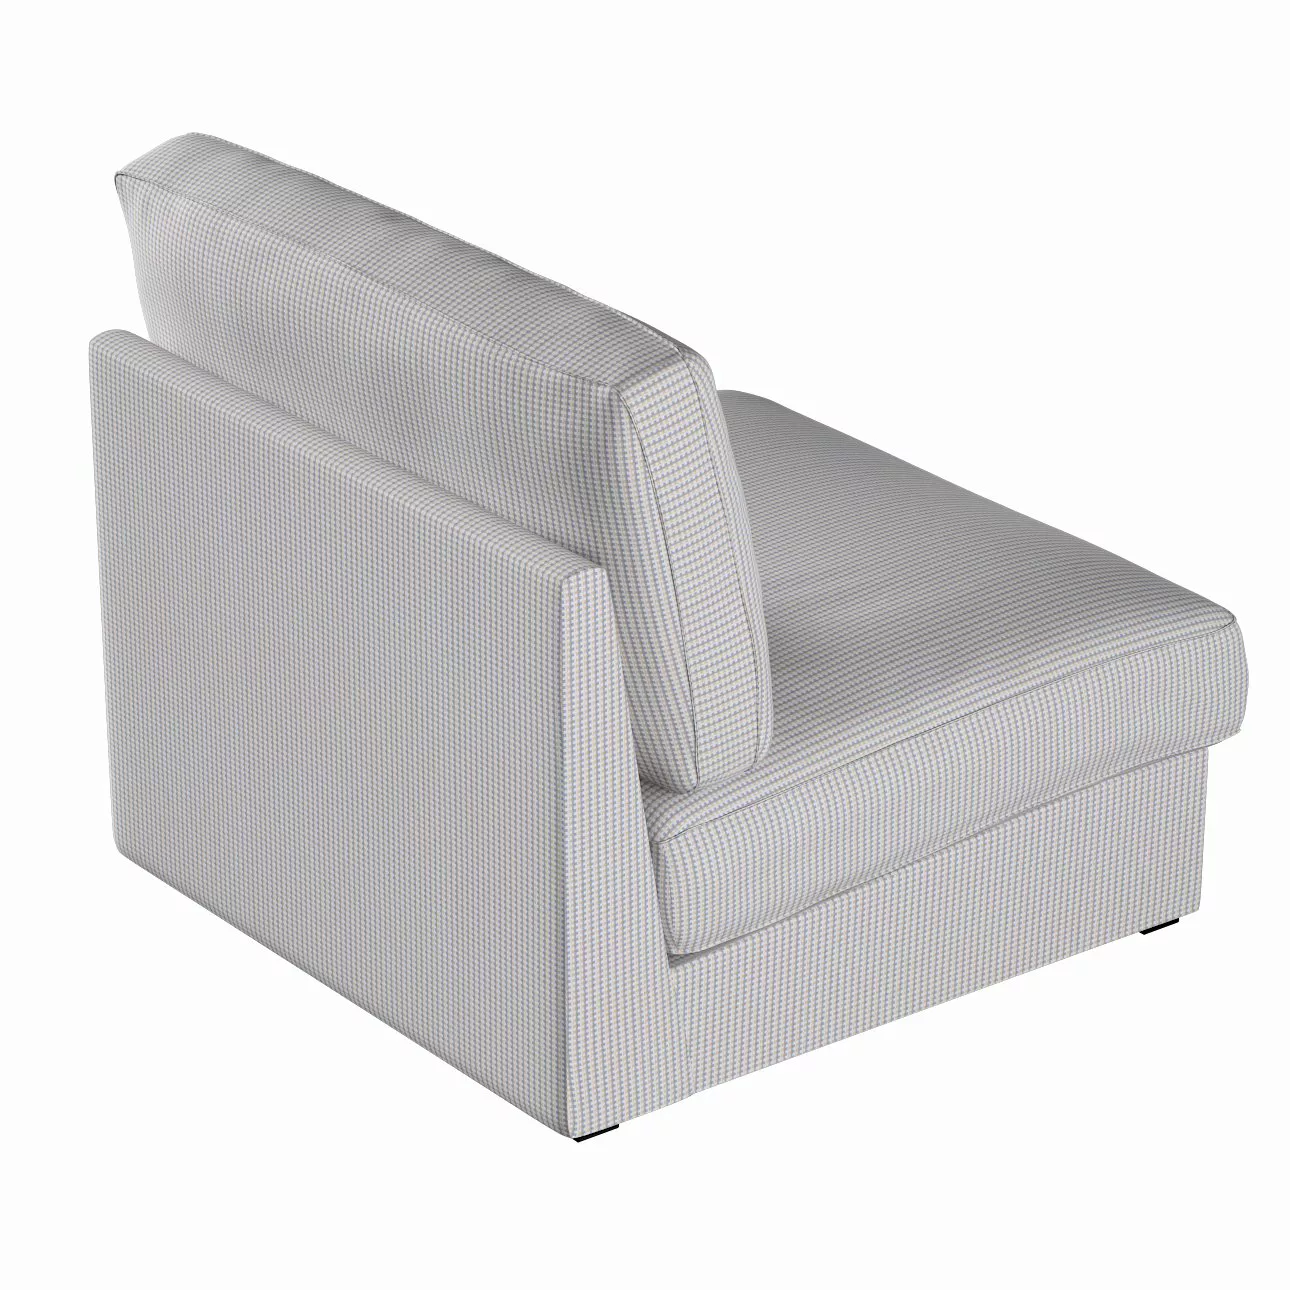 Bezug für Kivik Sessel nicht ausklappbar, beige-blau, Bezug für Sessel Kivi günstig online kaufen